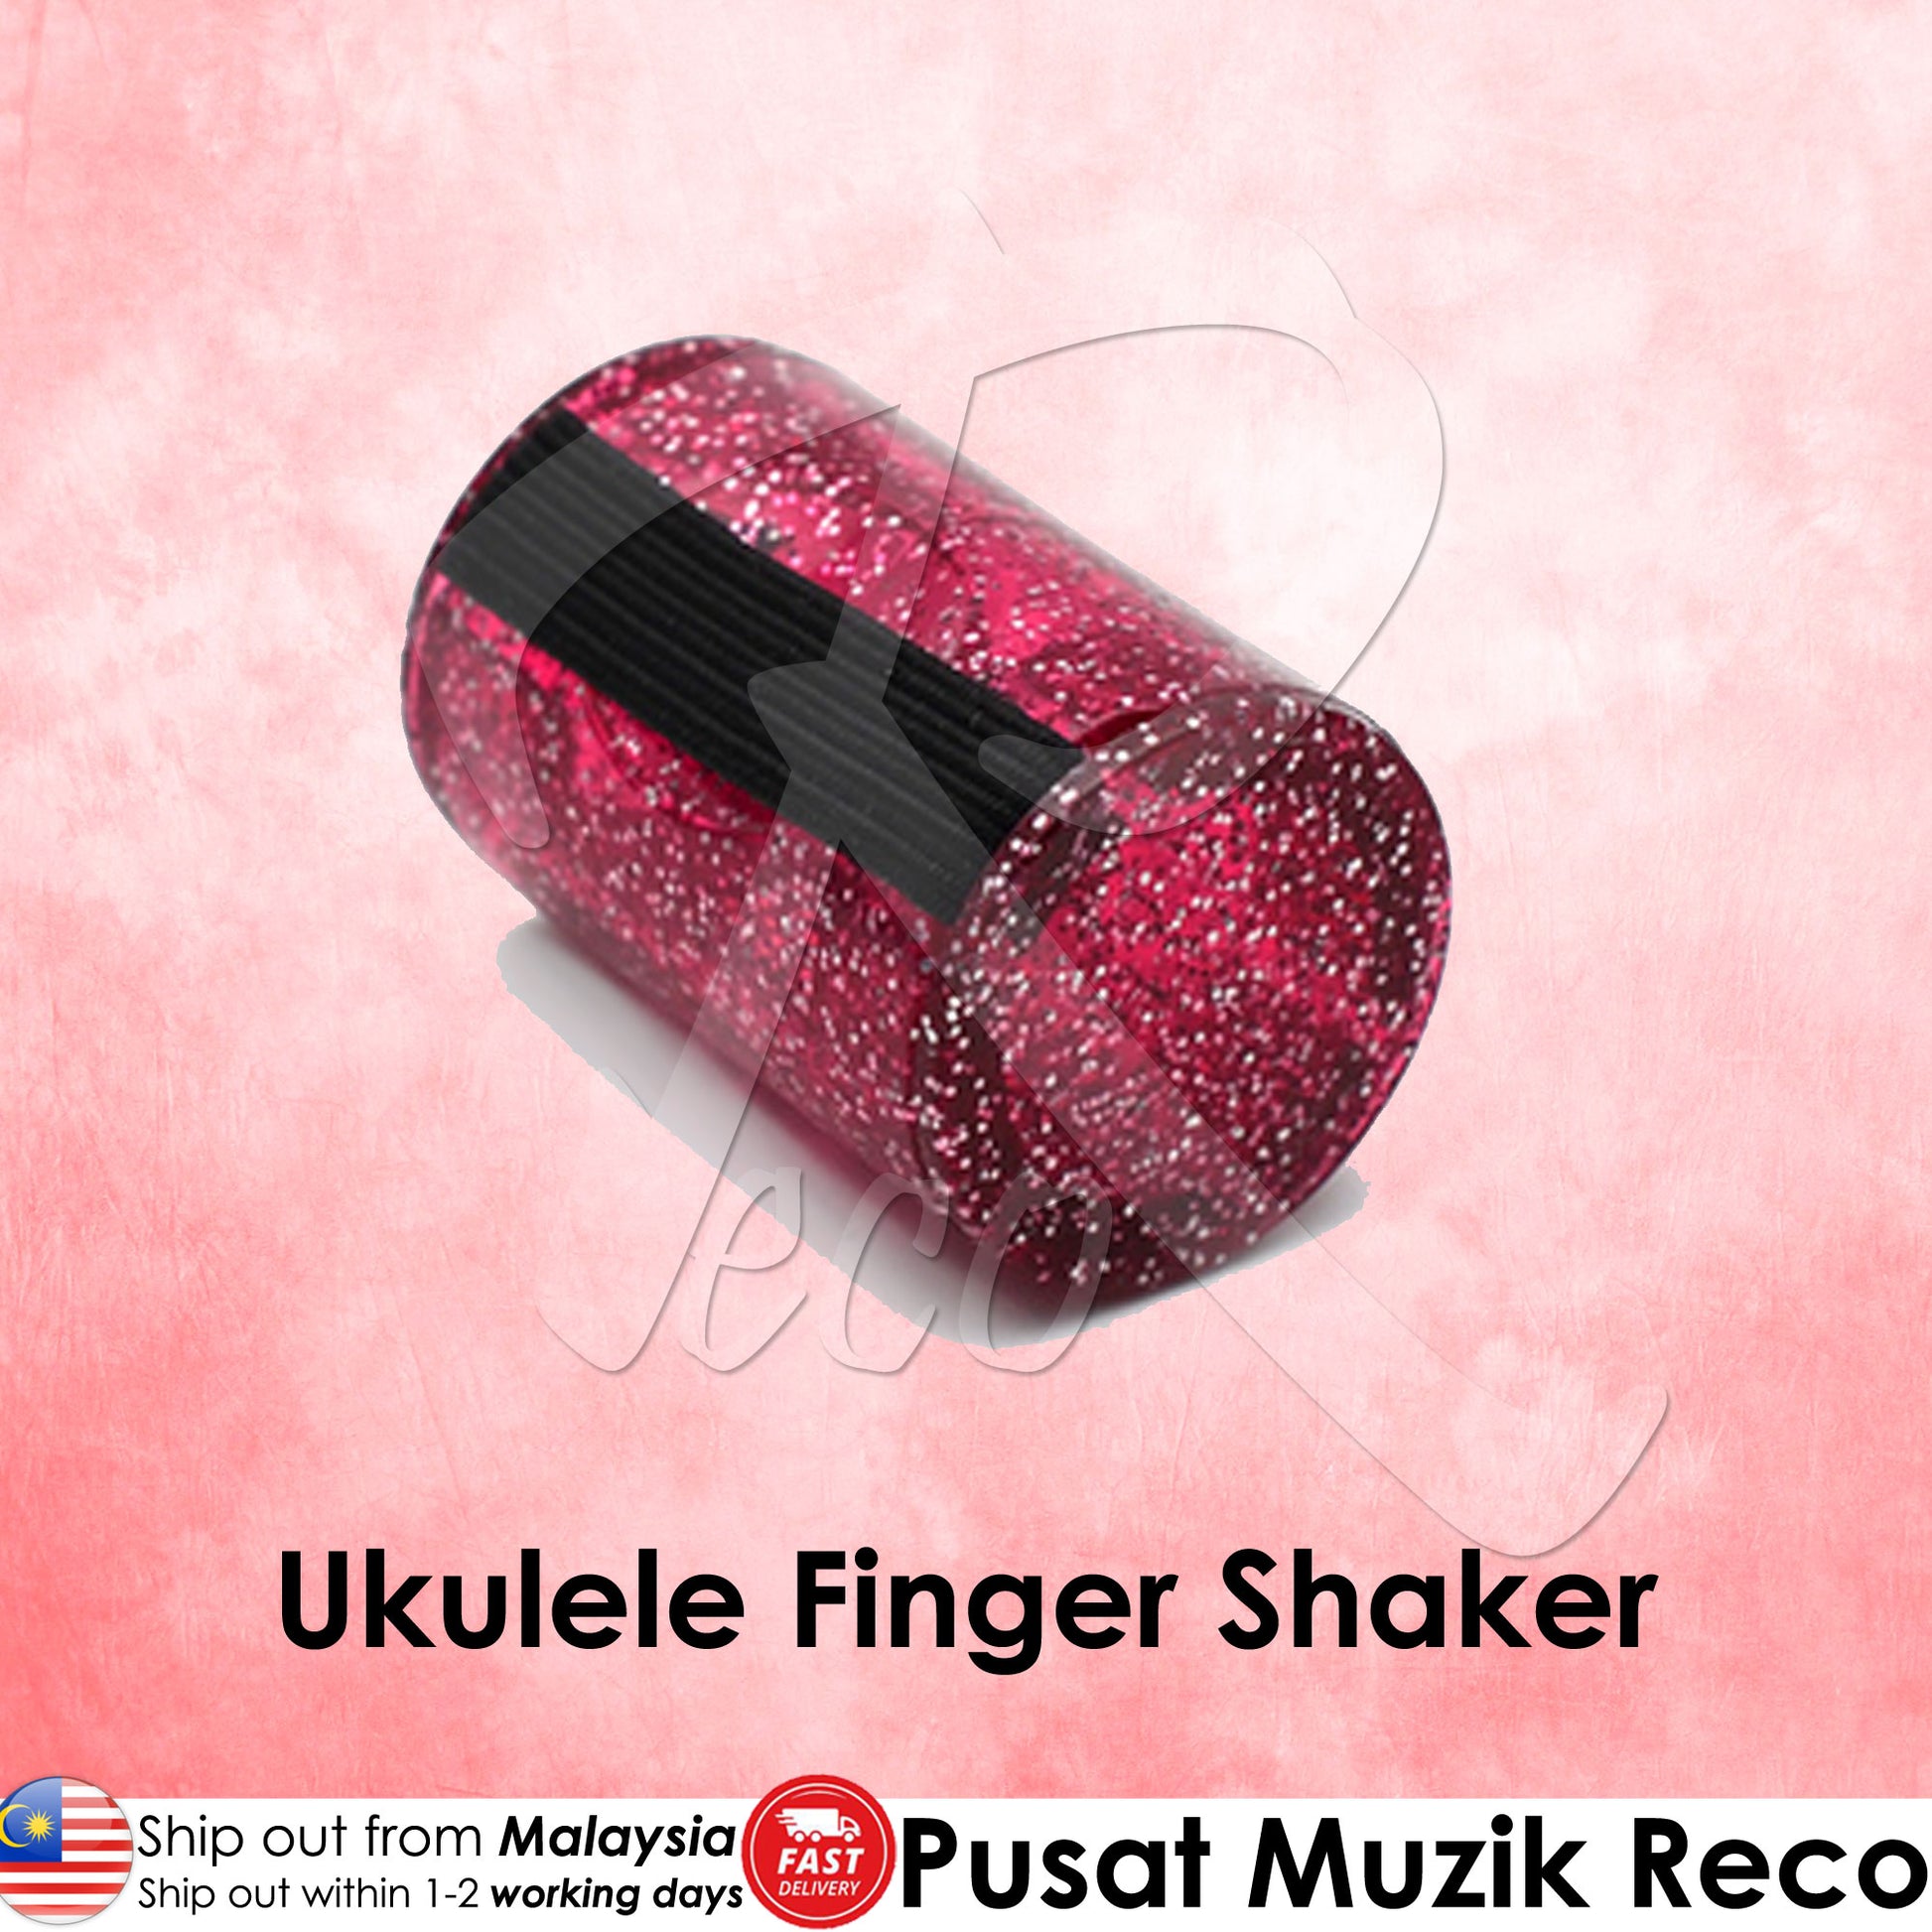 Ukulele Finger Shaker - Recomusic